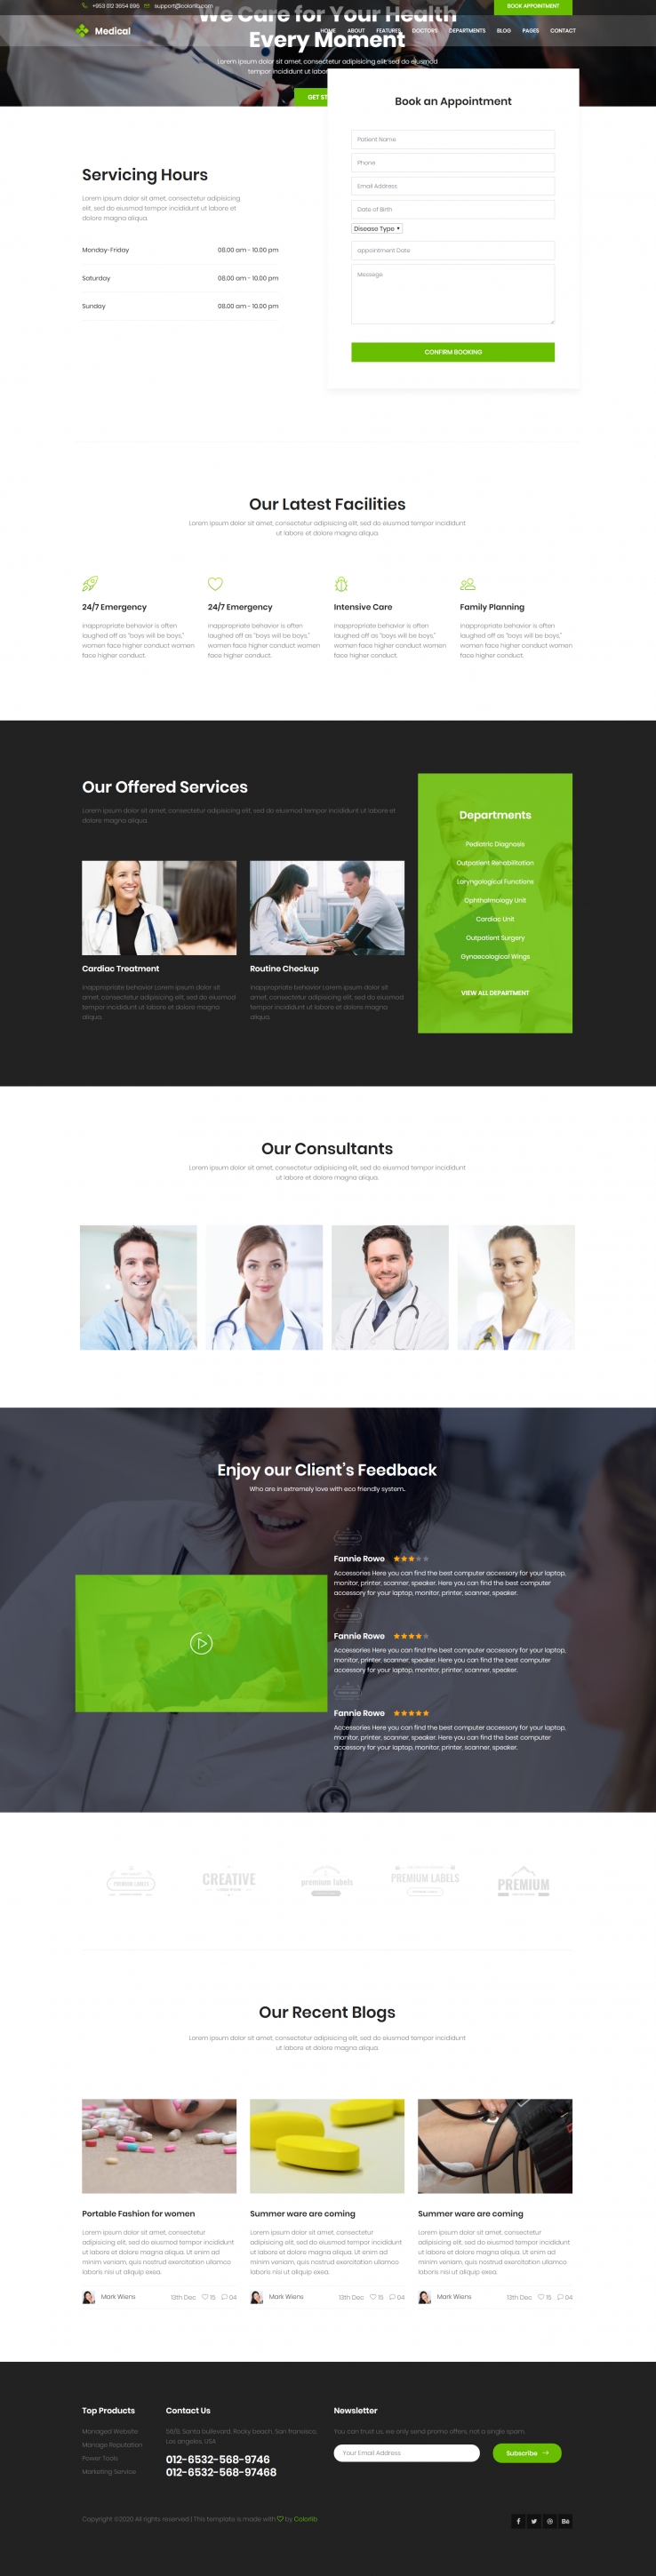 绿色简洁风格响应式医疗团队动态网页模板